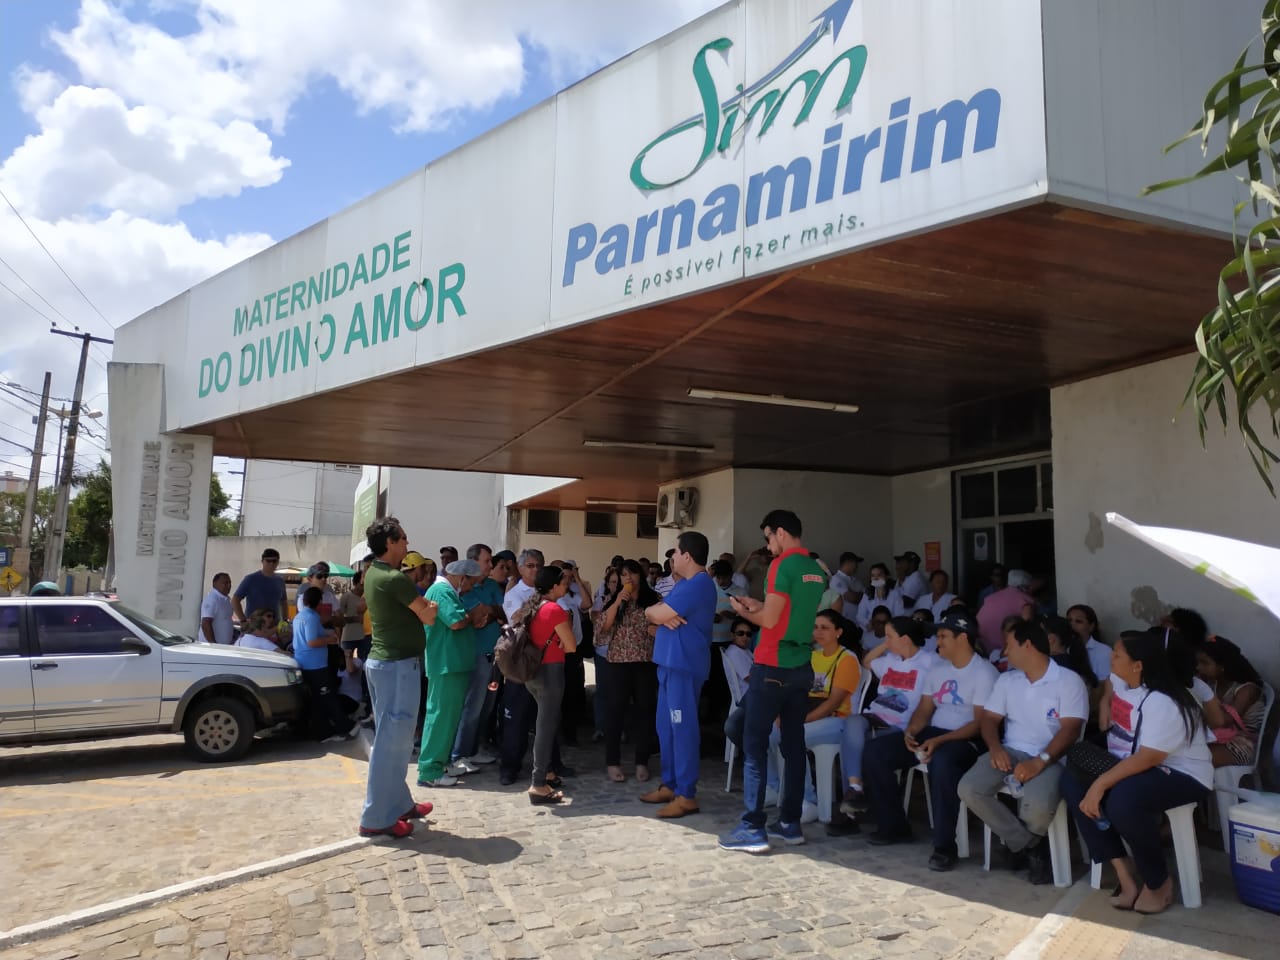 Servidores municipais fazem protesto em frente à maternidade Divino Amor em Parnamirim